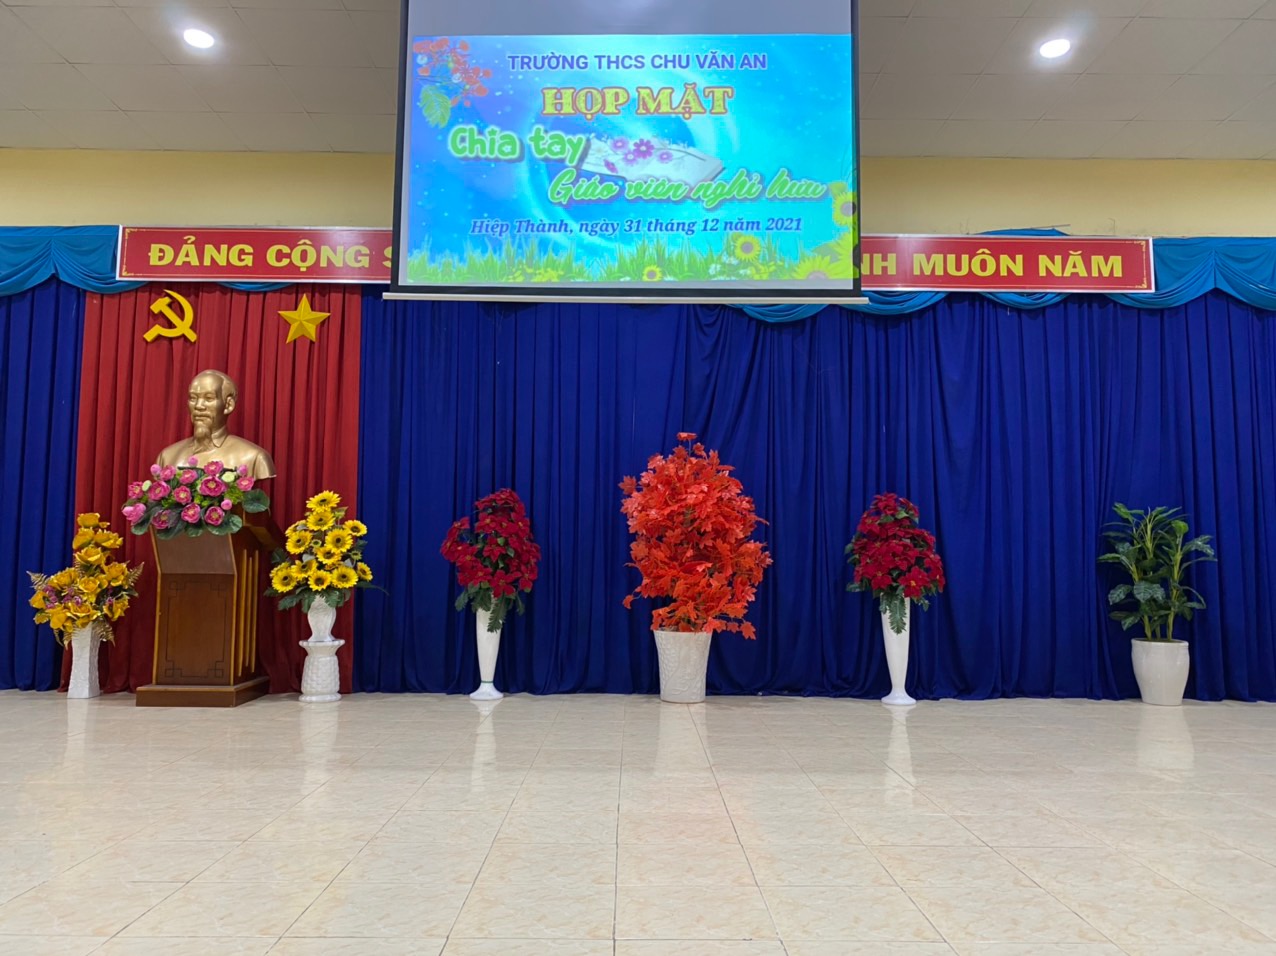 Trường THCS Chu Văn An, thành phố Thủ Dầu Một tổ chức họp mặt chia tay giáo viên nghỉ hưu